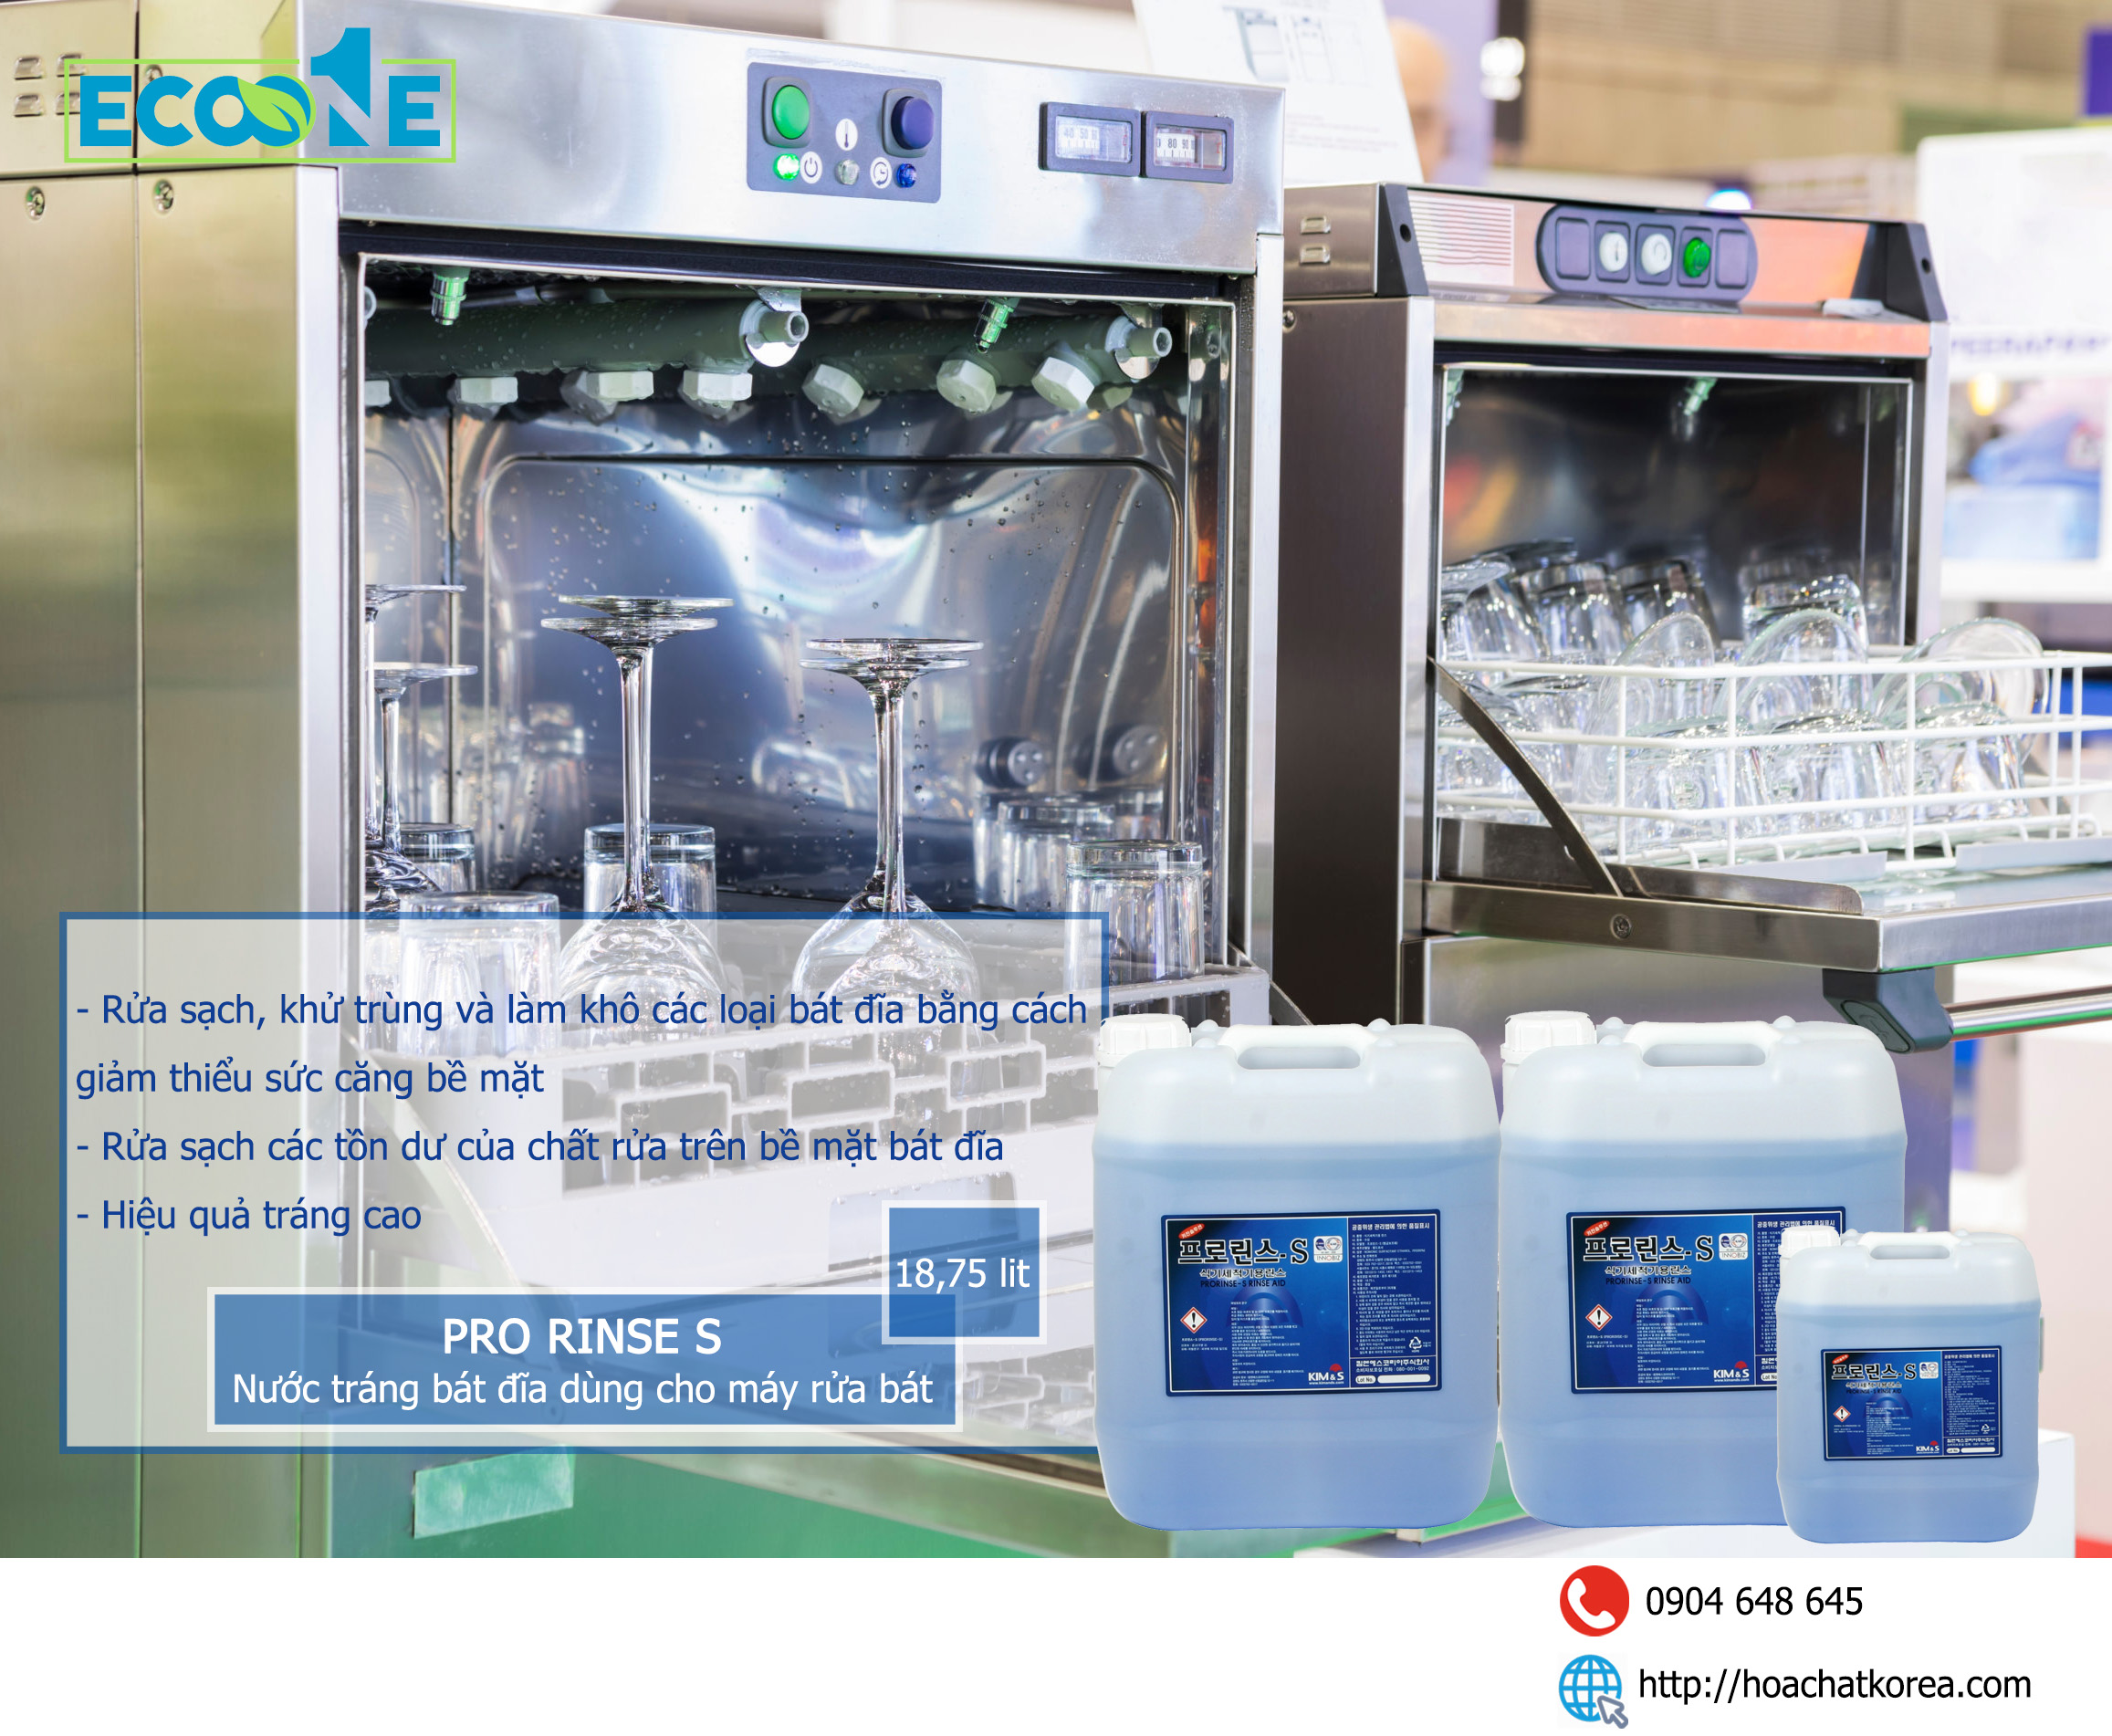 Nước tráng bát đĩa cho máy rửa bát công nghiệp Pro Rinse S